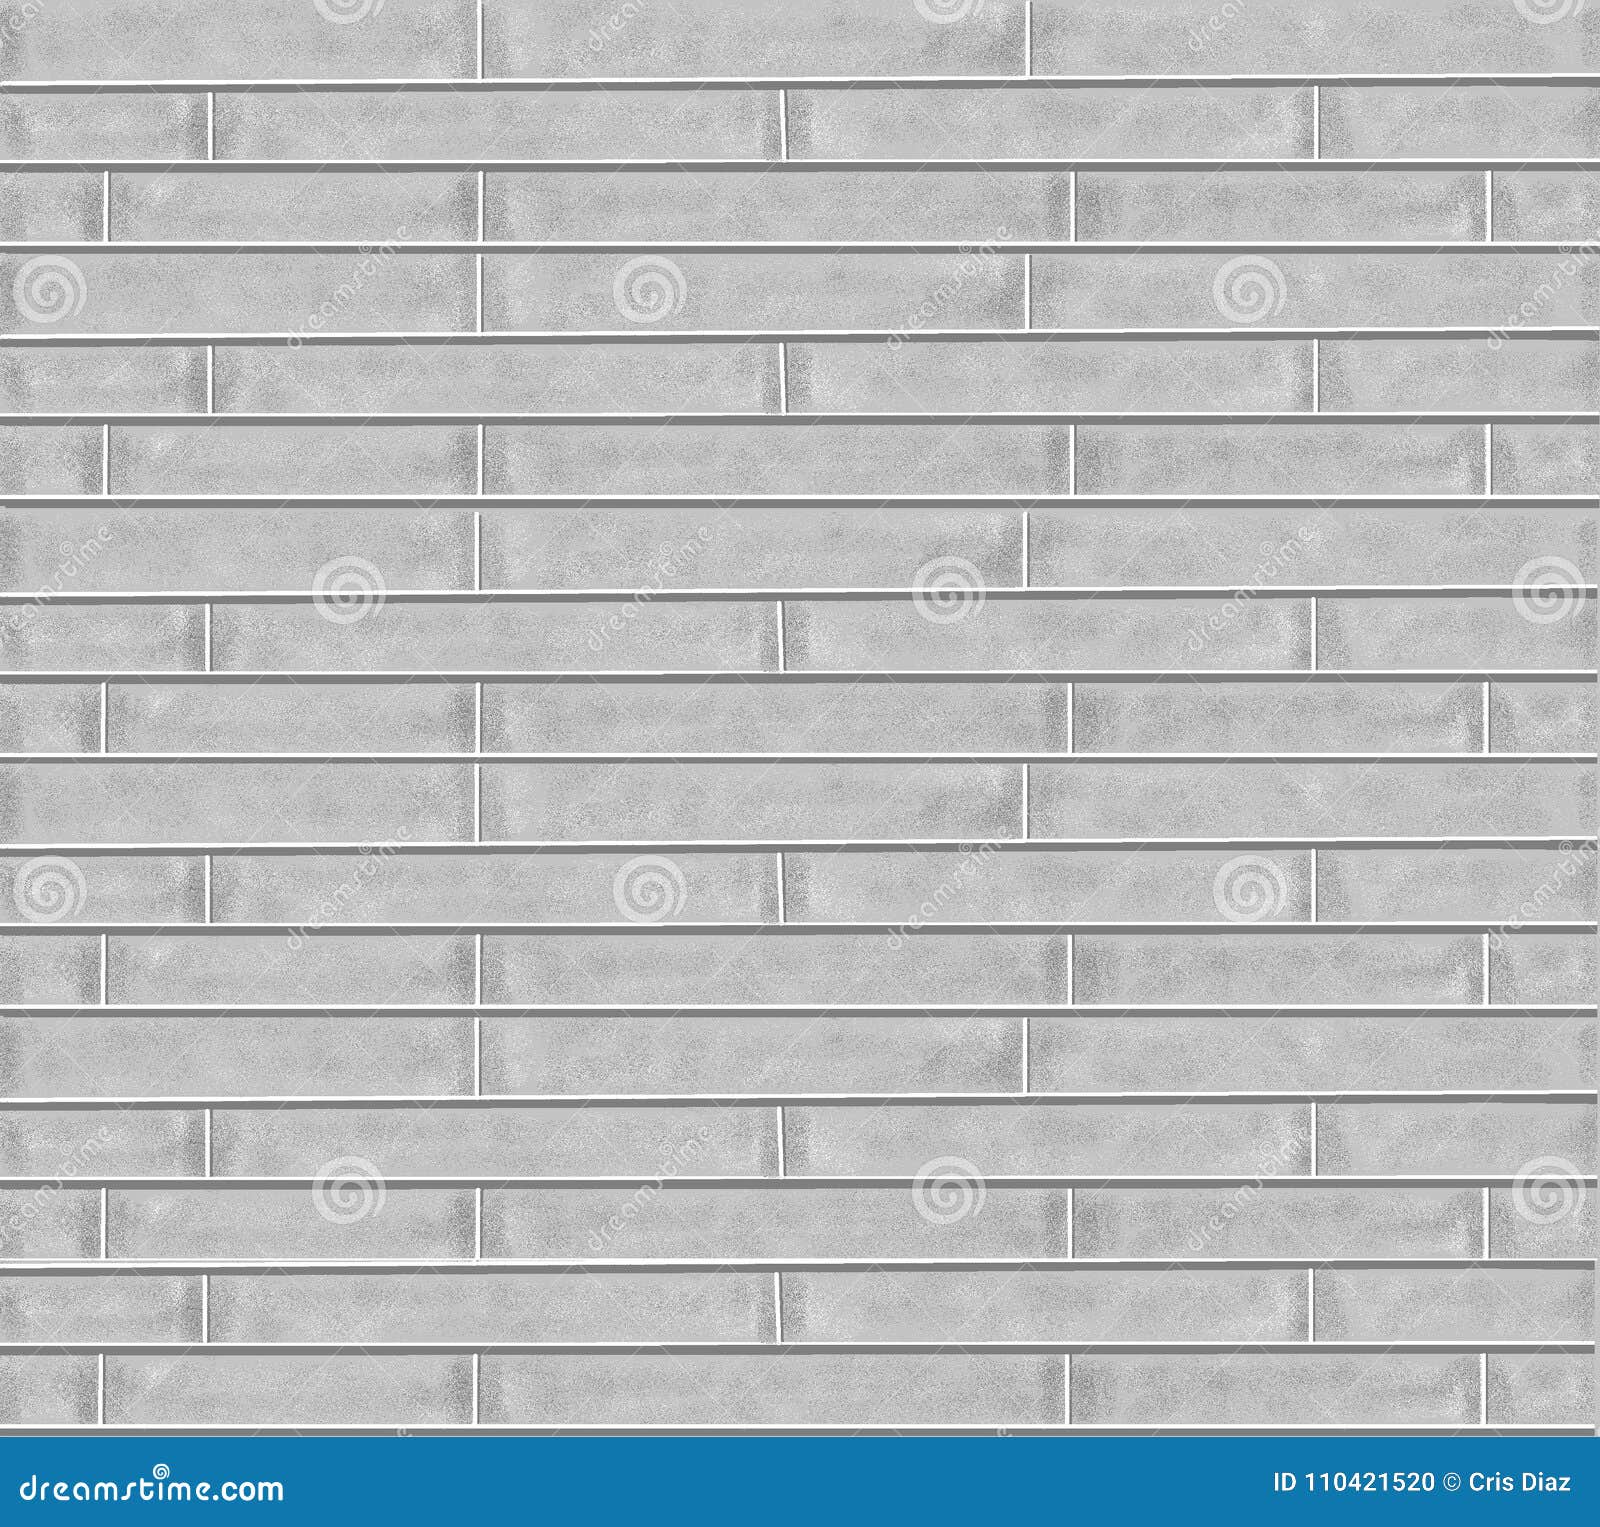 pattern background texture gray bricks